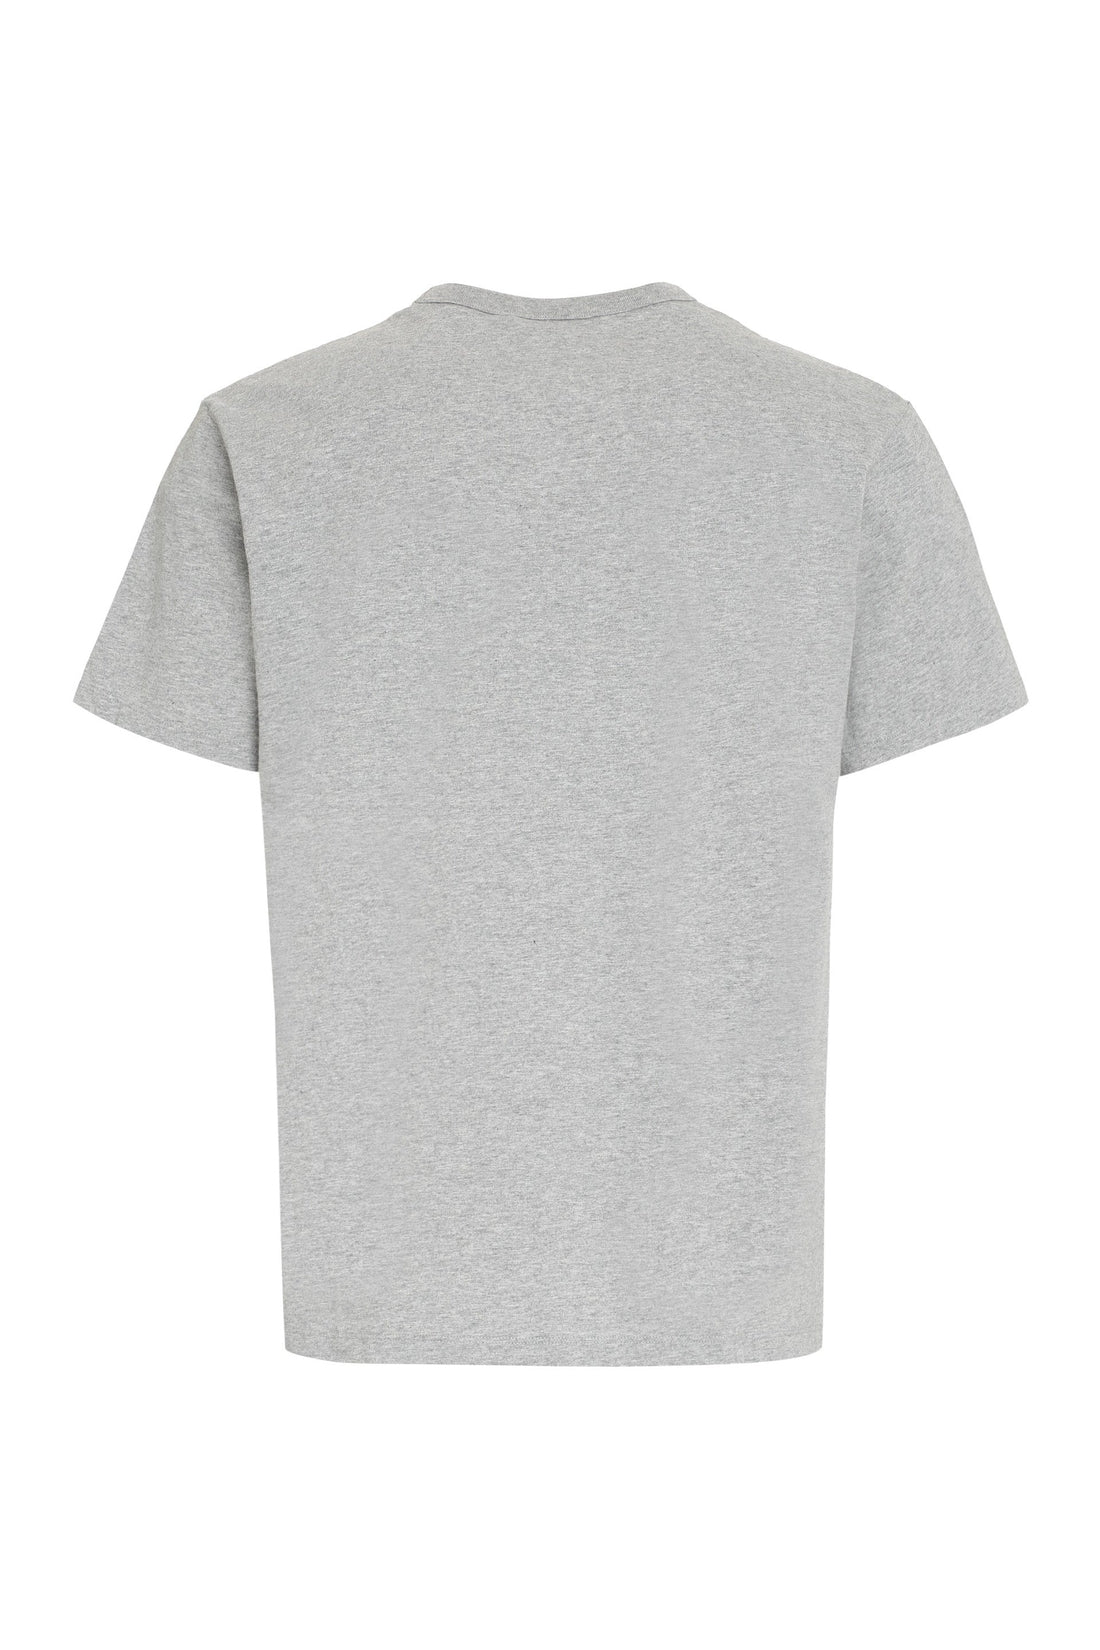 Maison Kitsuné-OUTLET-SALE-Printed cotton T-shirt-ARCHIVIST